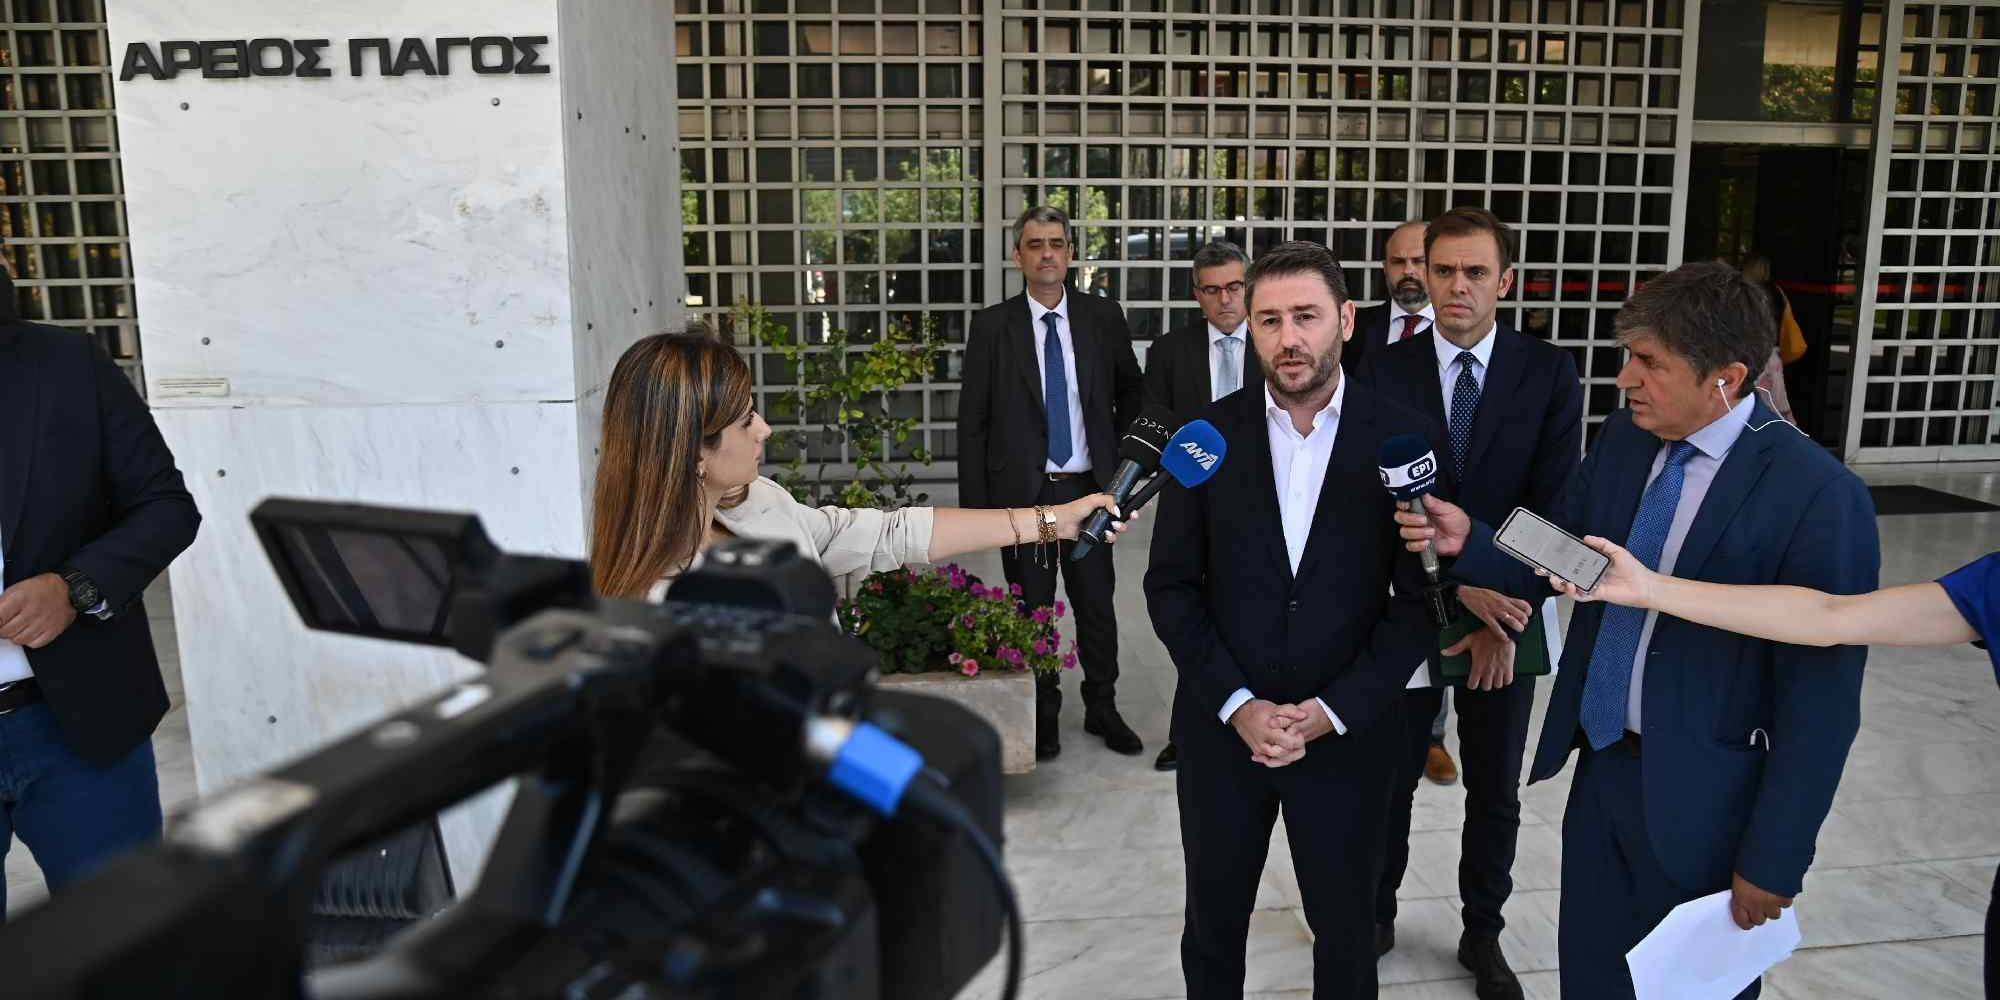 Μηνυτήρια αναφορά στην Εισαγγελεία του Αρείου Πάγου κατέθεσε ο πρόεδρος του ΠΑΣΟΚ- ΚΙΝΑΛ, Νίκος Ανδρουλάκης